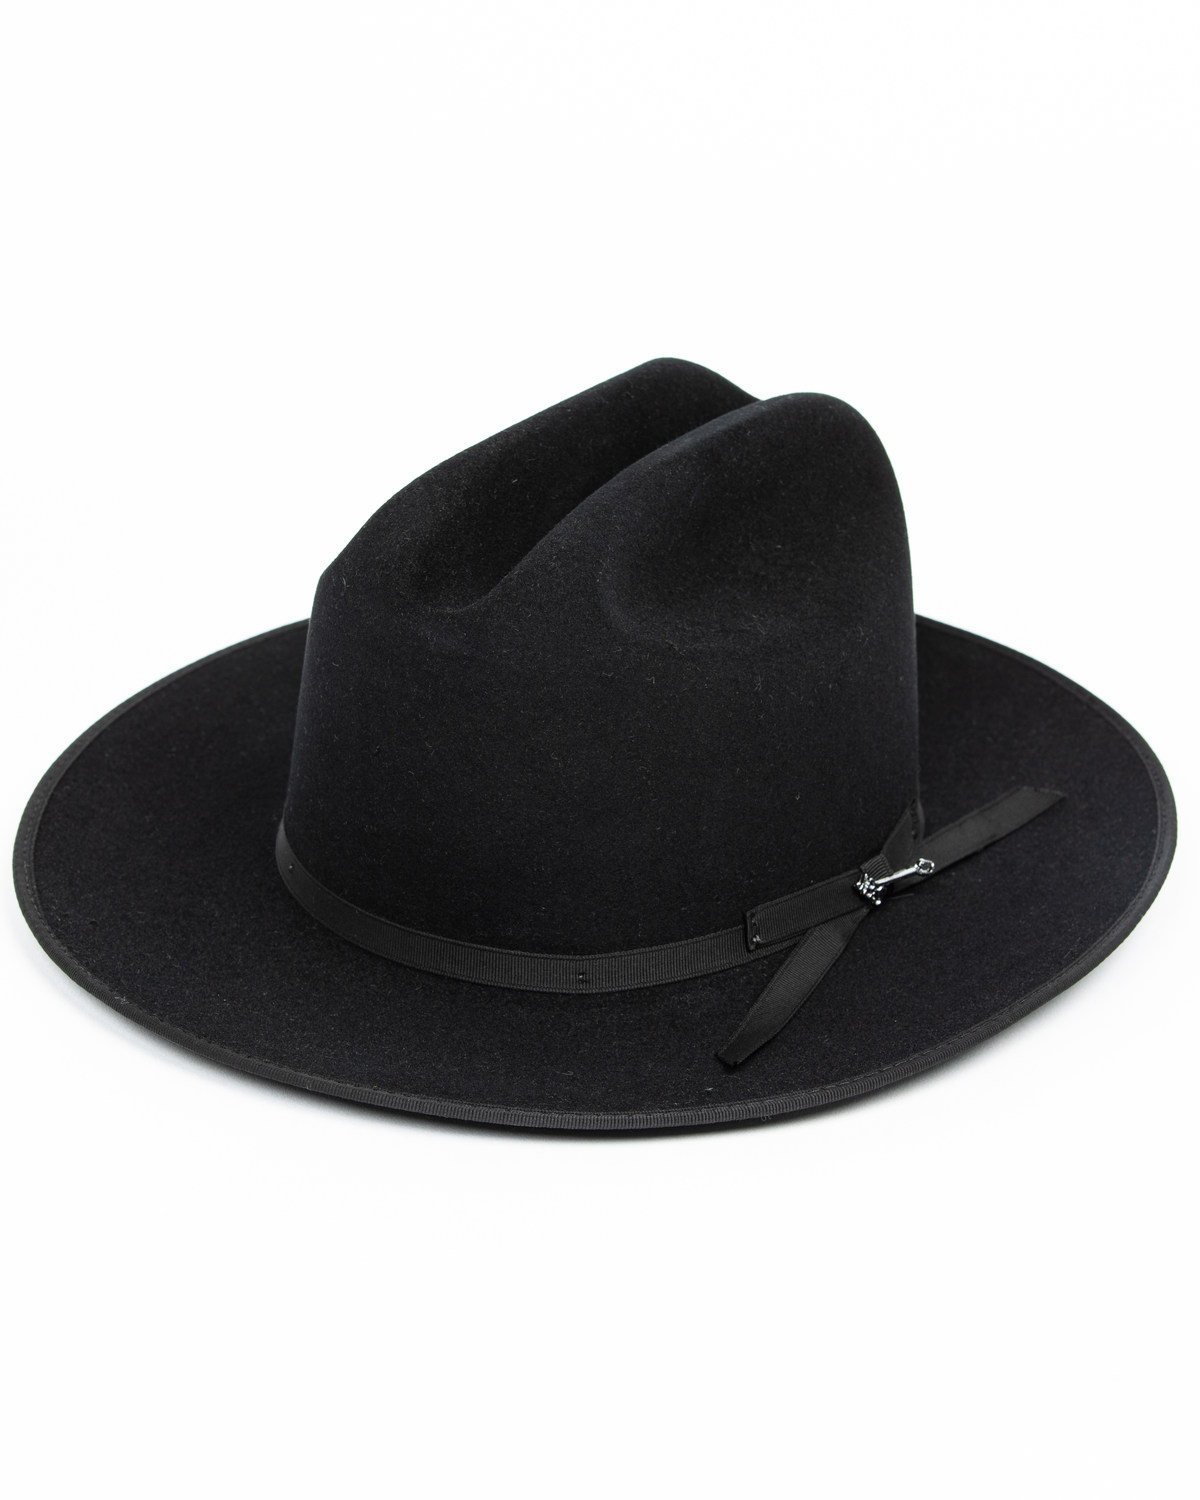 Stetson Open Road 6X Felt Western Fashion Hat